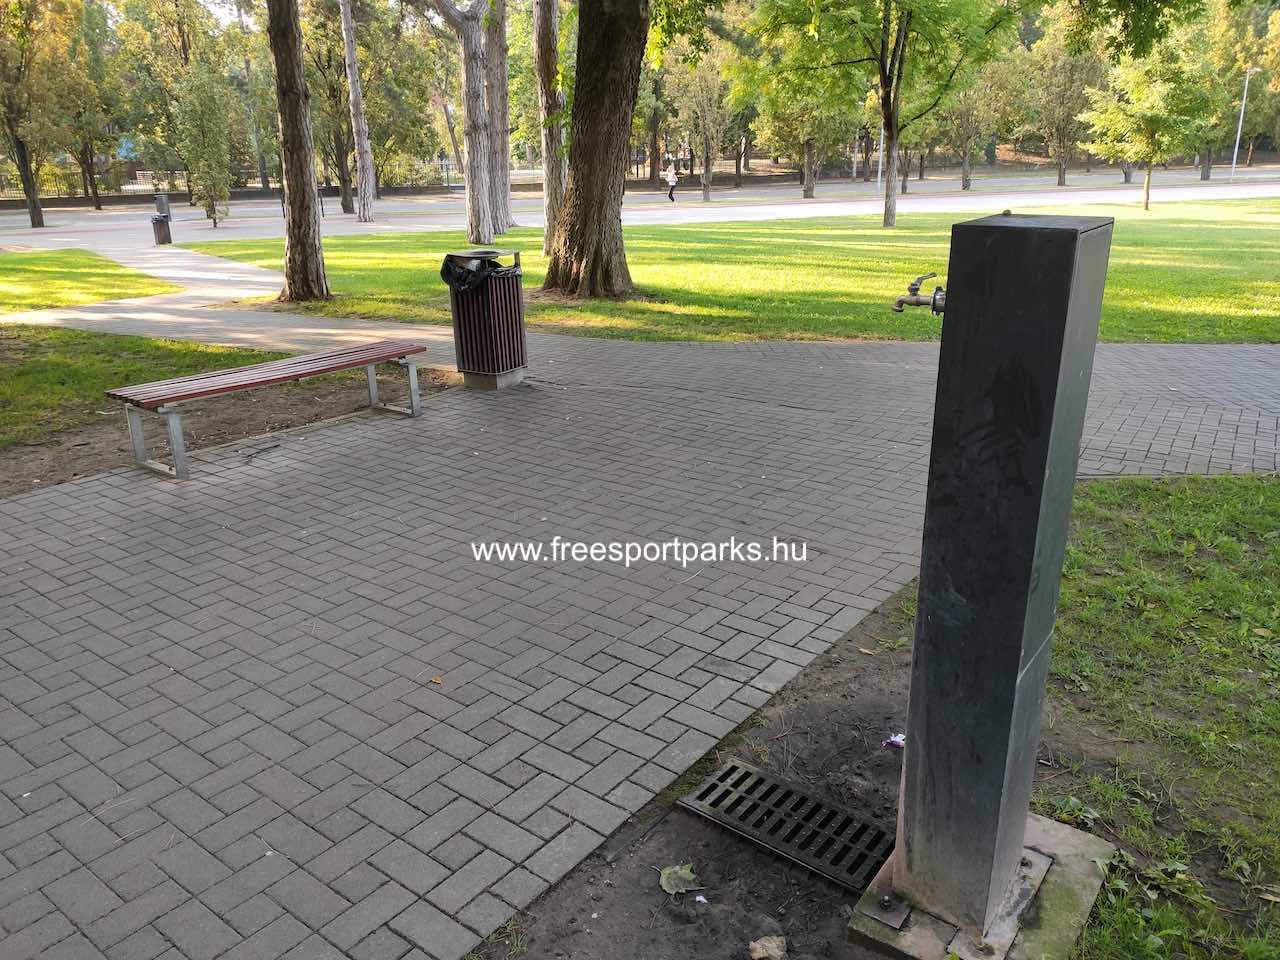 ivókút, ahol van pad és szemetes is - Nagyerdei Stadion futópálya, Debrecen - Free Sport Parks térkép